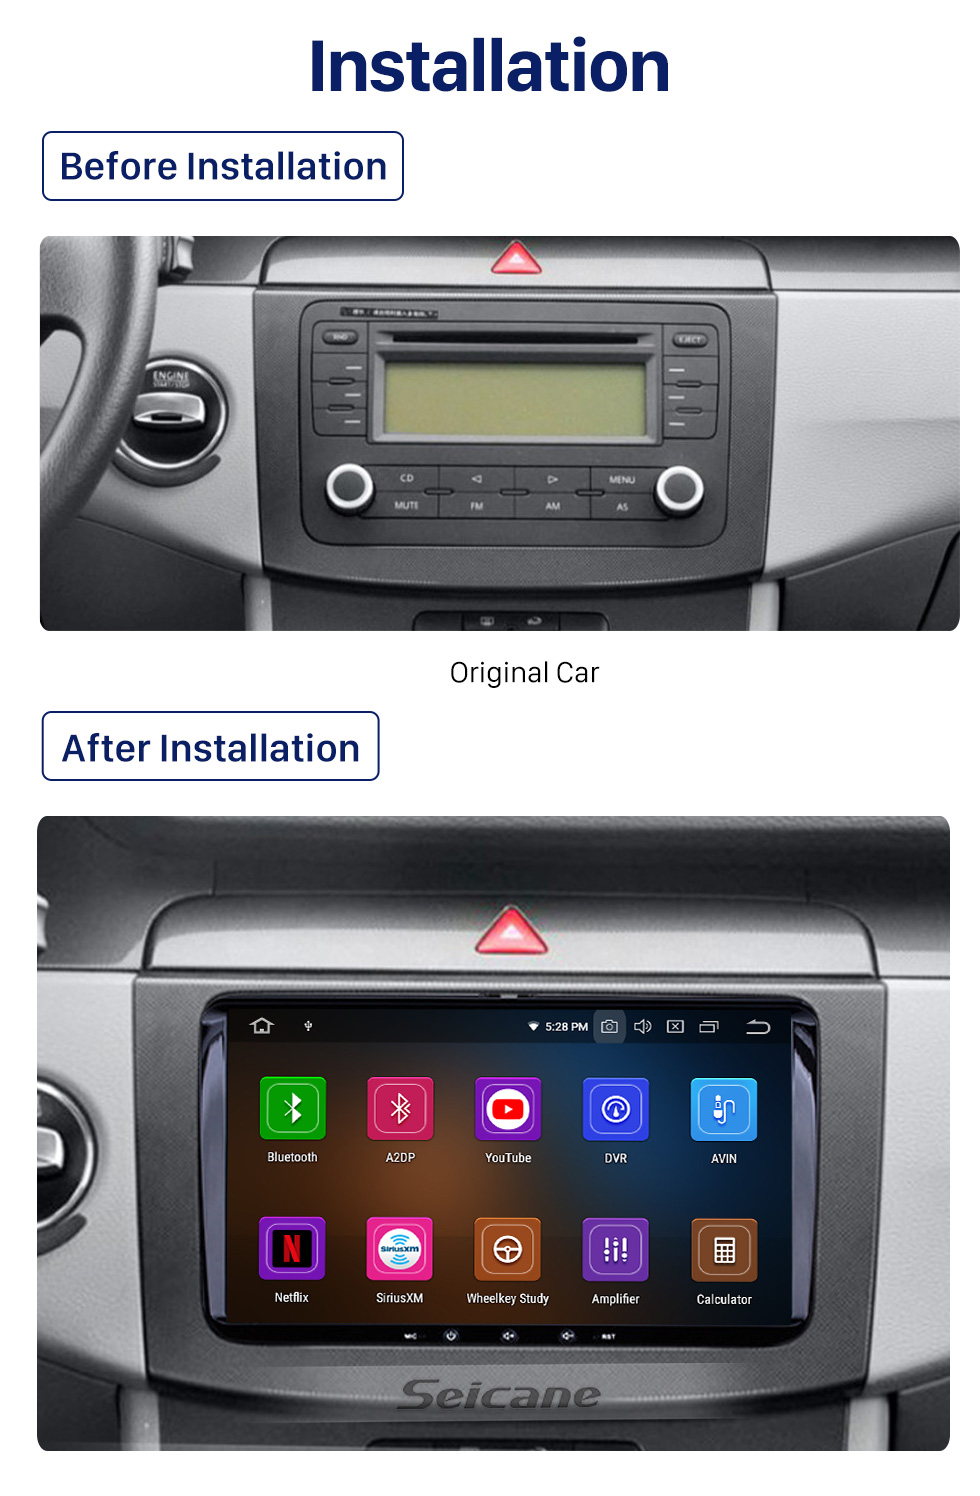 Seicane 9 pouces Android 10.0 Radio Car Navigation Head Unit pour 2008-2013 Skoda Seat VW Volkswagen Passat Tiguan Polo Scirocco avec 4G WiFi Mirror Link OBD2 Bluetooth Commande au volant